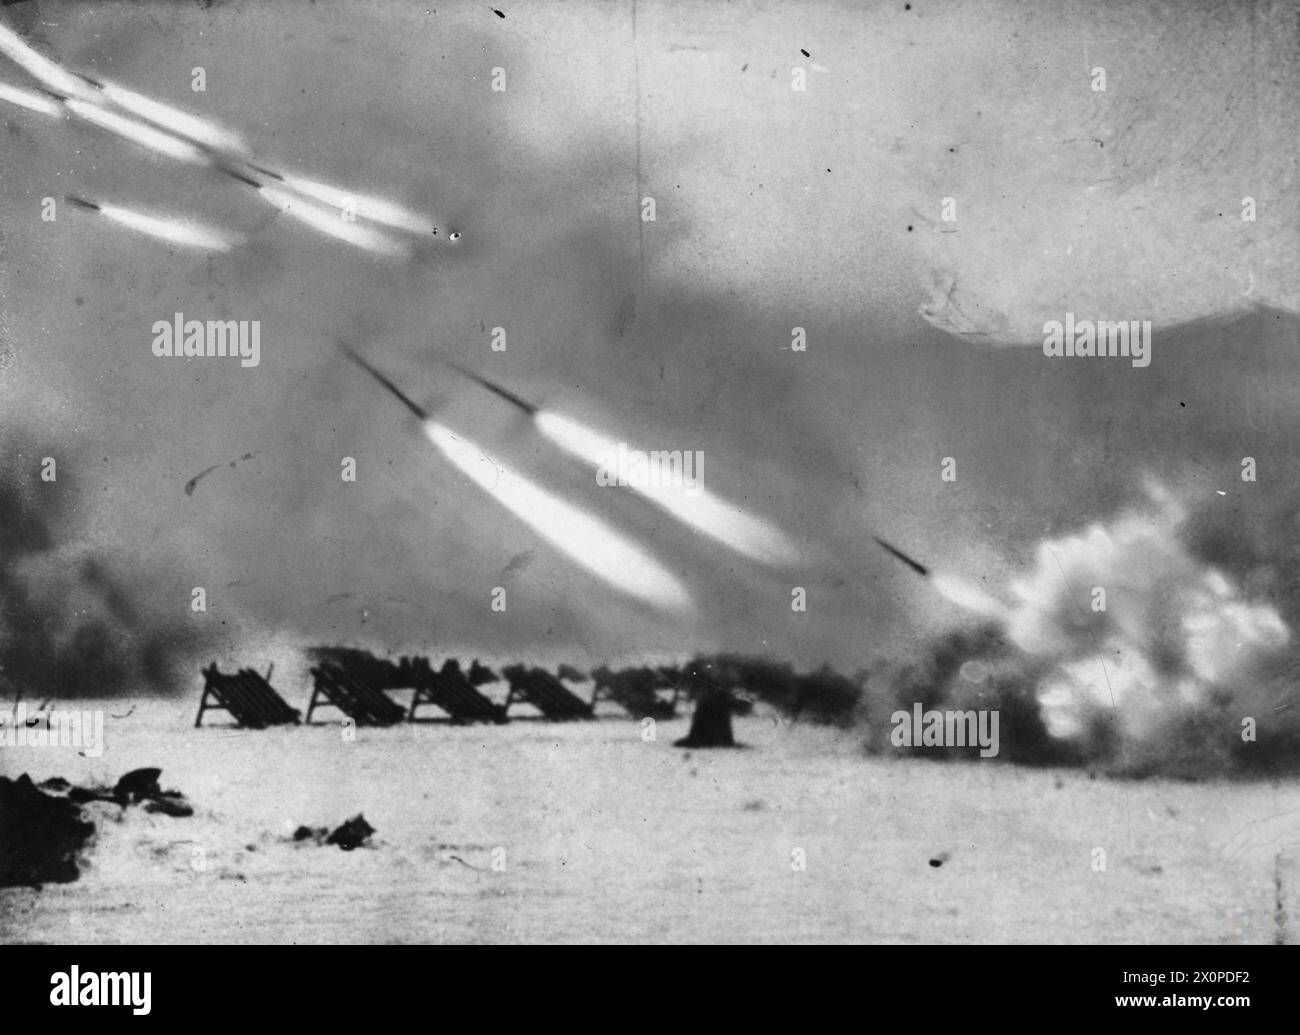 LA BATAILLE DE STALINGRAD, AOÛT 1942-FÉVRIER 1943 - toujours tiré du film soviétique 'L'histoire de Stalingrad' montrant des missiles de roquette tirés sur les positions allemandes de l'Armée rouge Banque D'Images